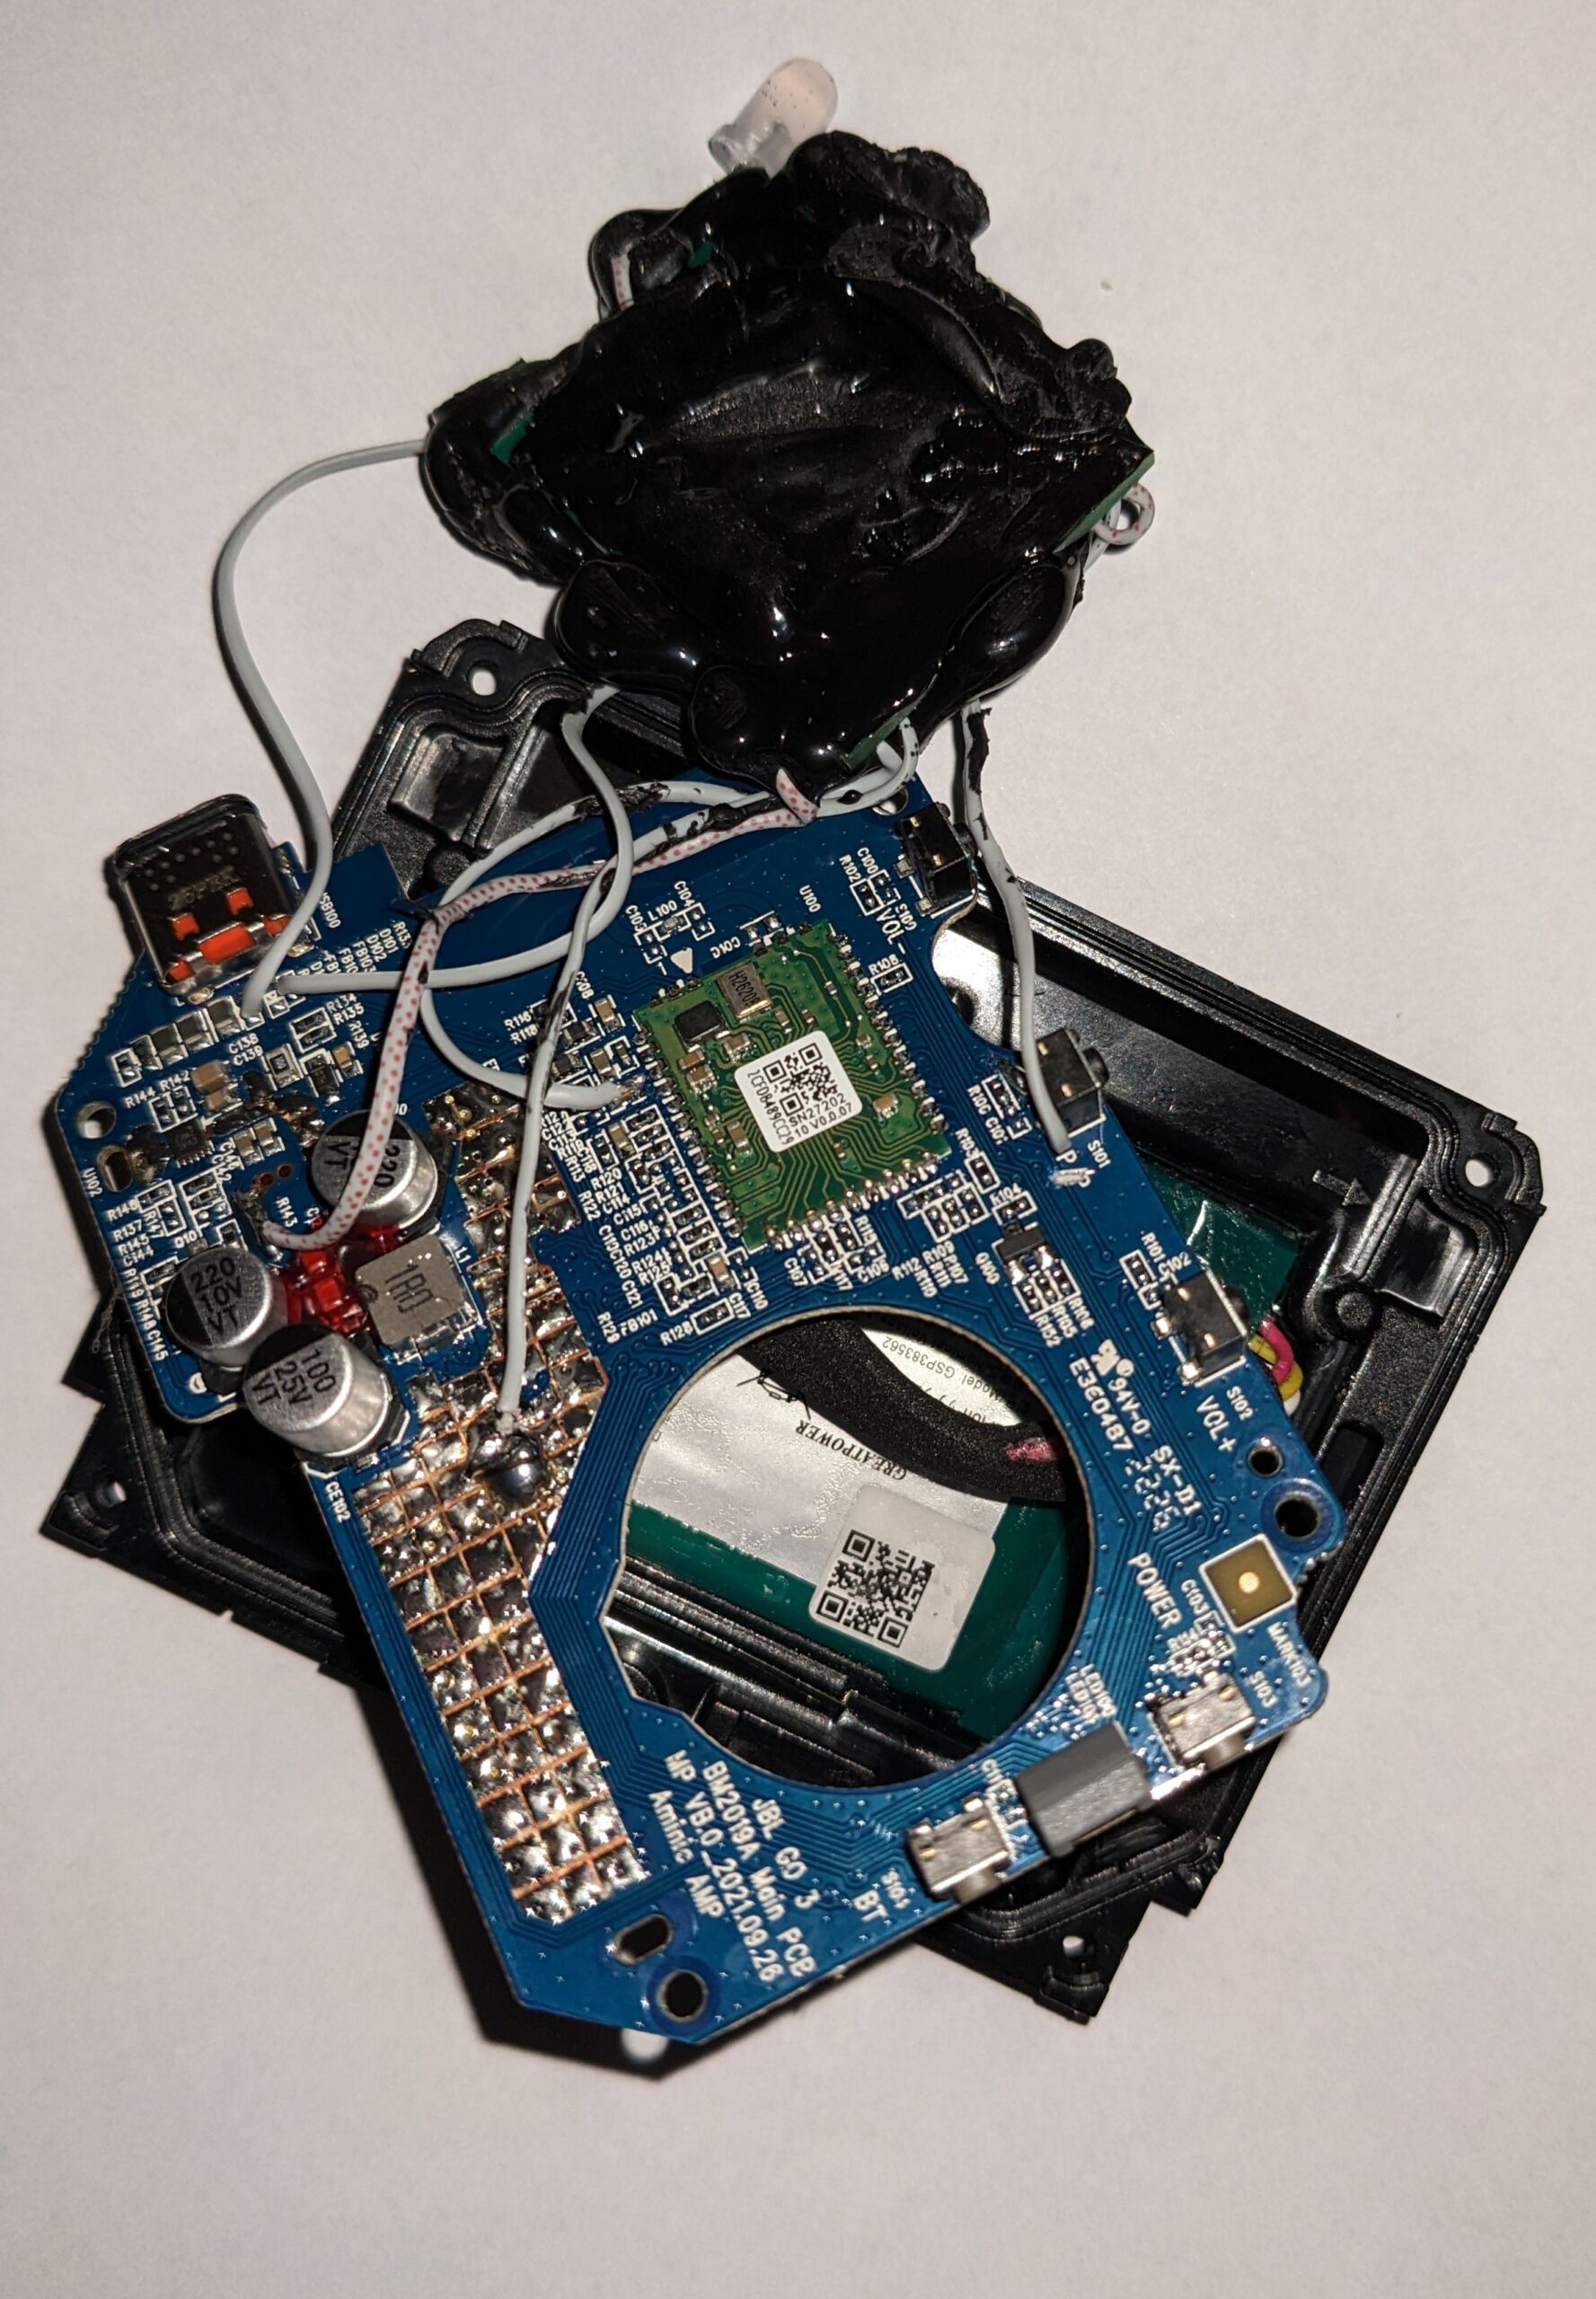 Chips injetores CAN presos a um globo de resina colado na placa de circuito JBL.